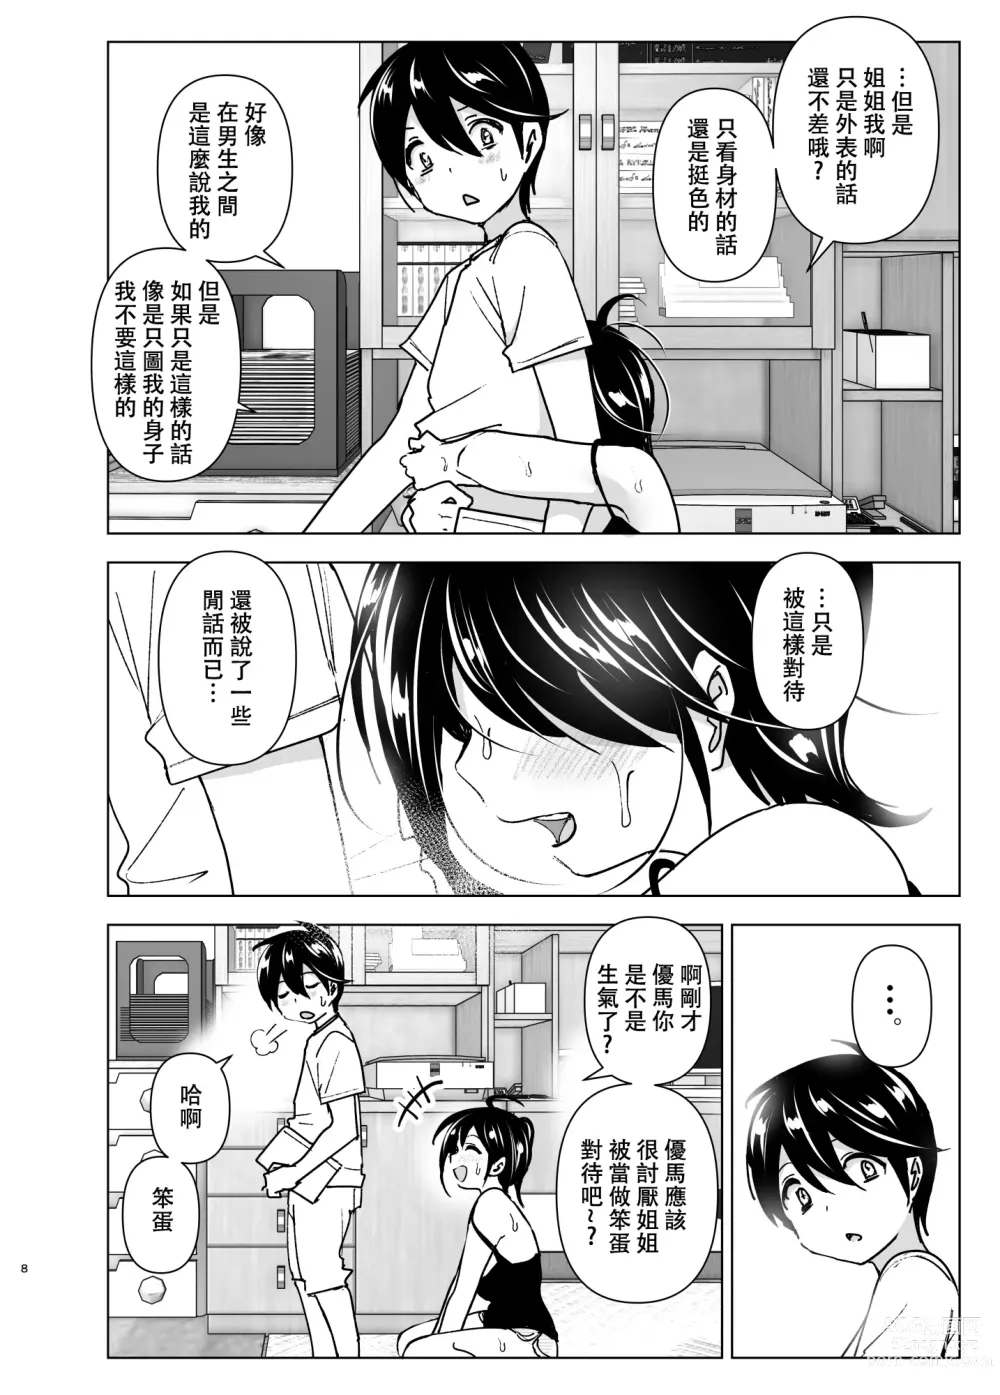 Page 7 of doujinshi 姐姐與傾聽抱怨的弟弟的故事 (decensored)